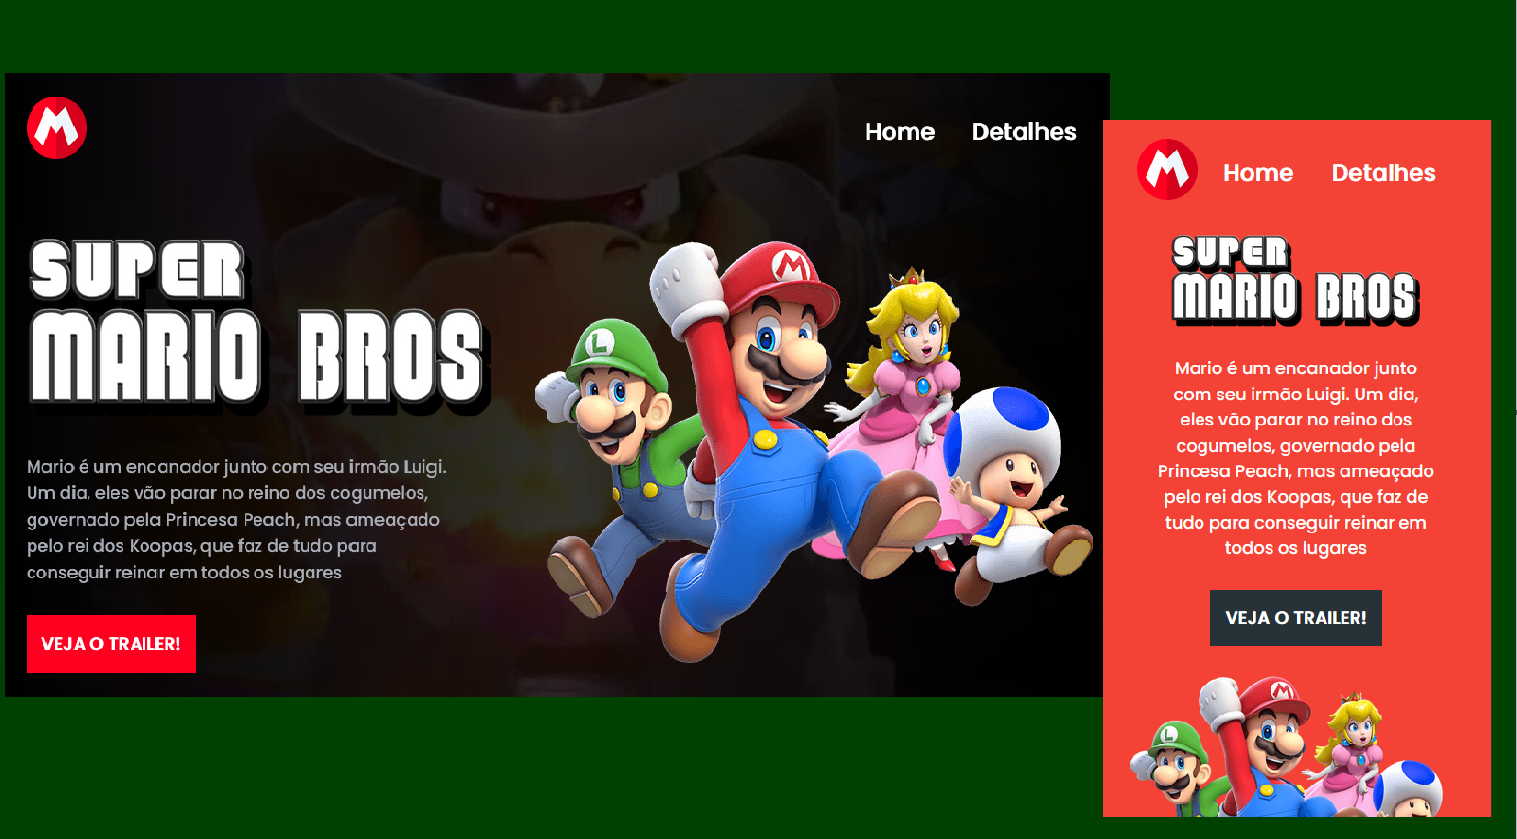 Imagem de landing page com versão para desktop e mobile, com informações sobre o filme Super Mario Bros